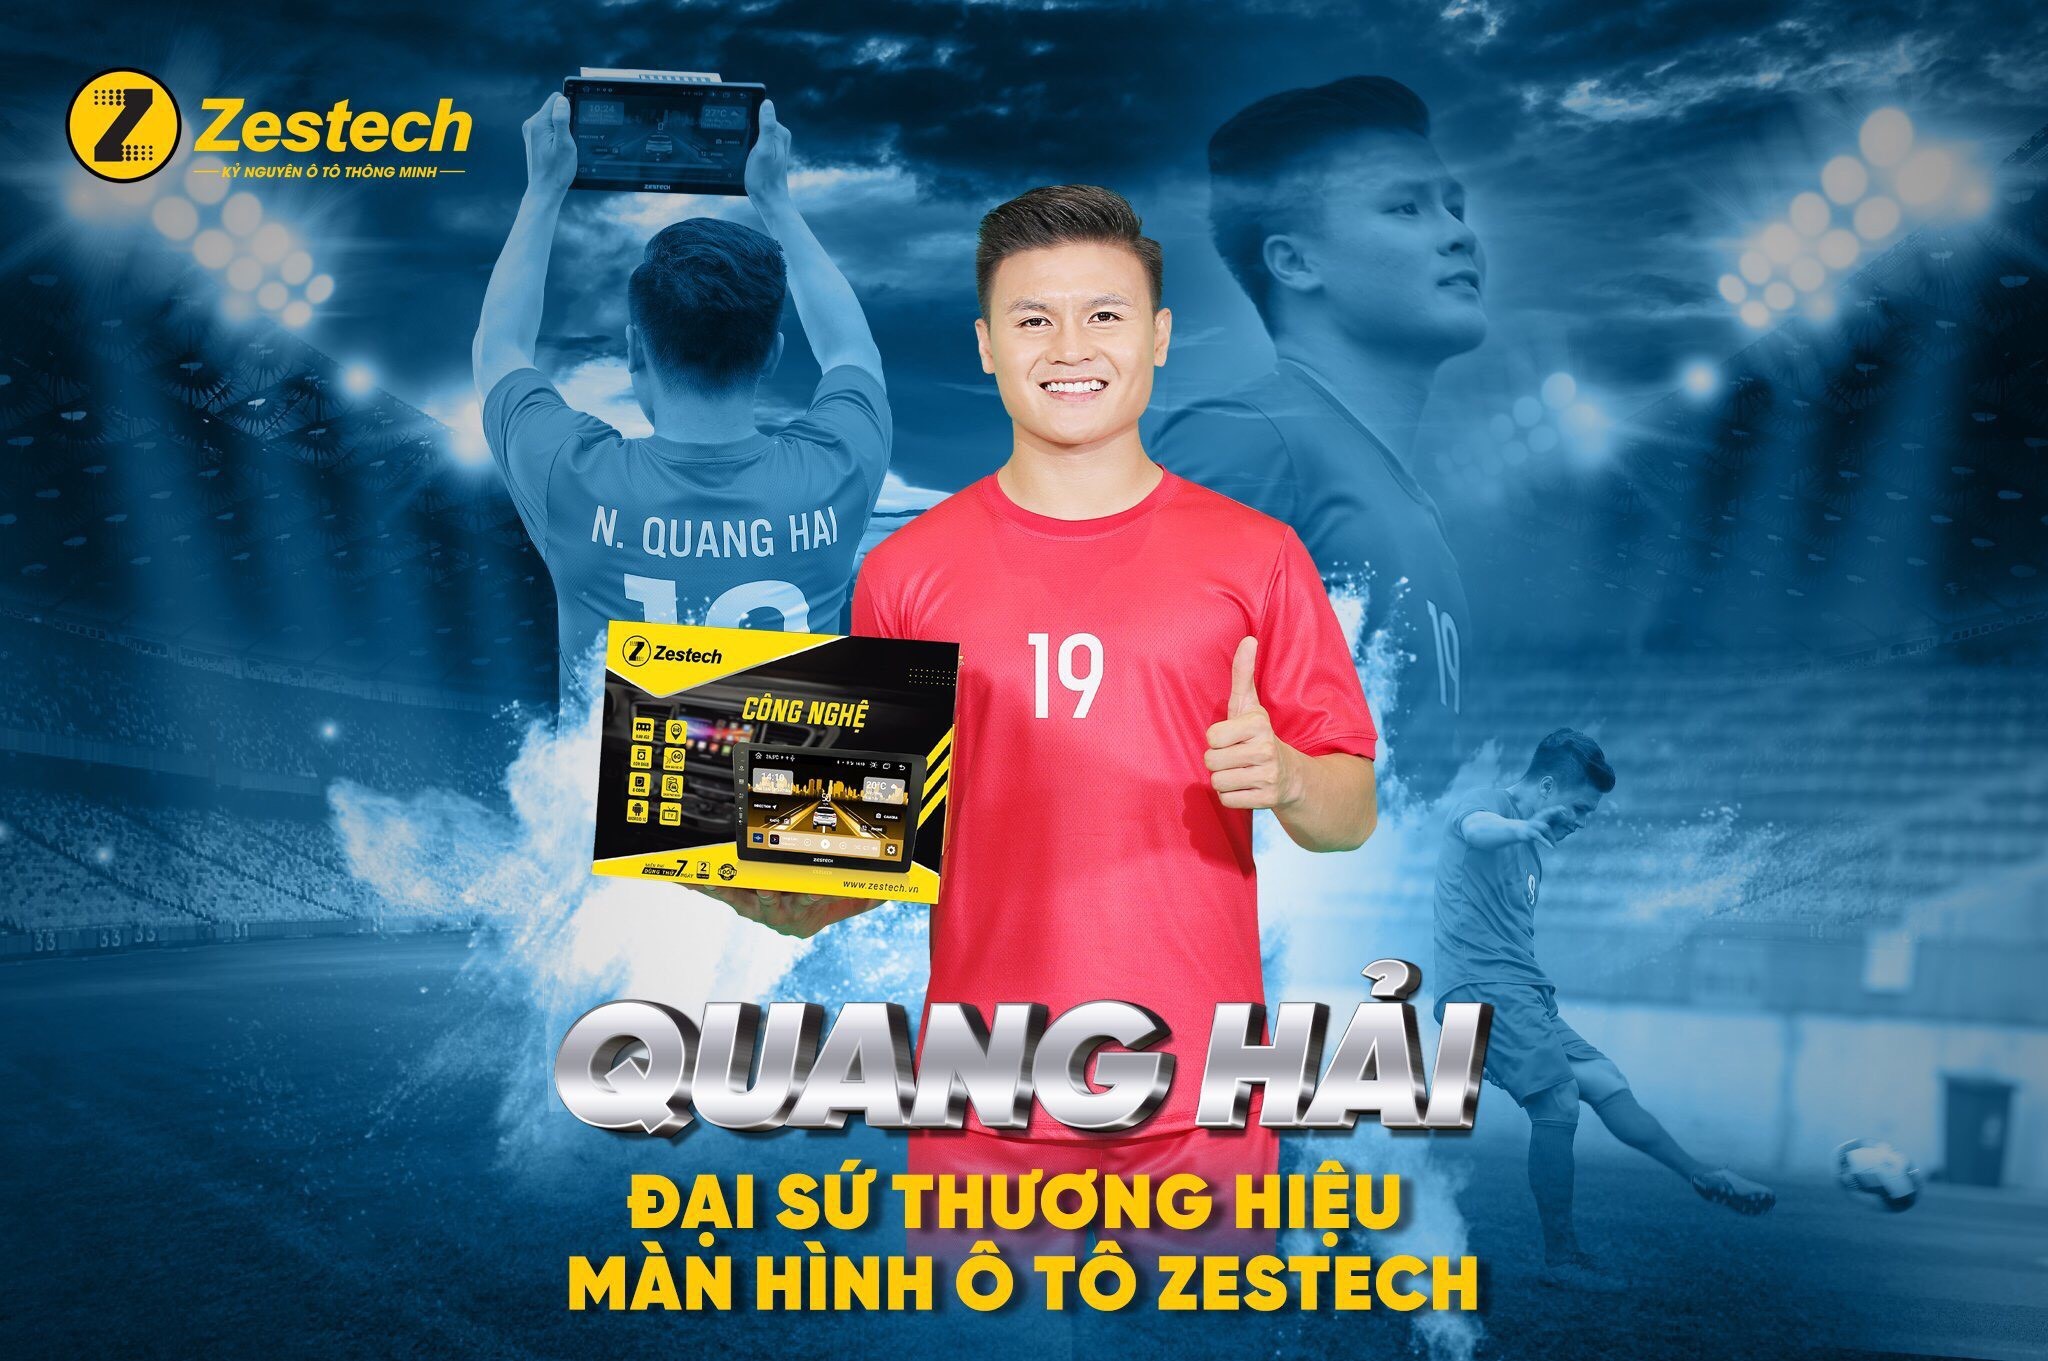 Zestech chính thức công bố cầu thủ Quang Hải là đại sứ thương hiệu 2022